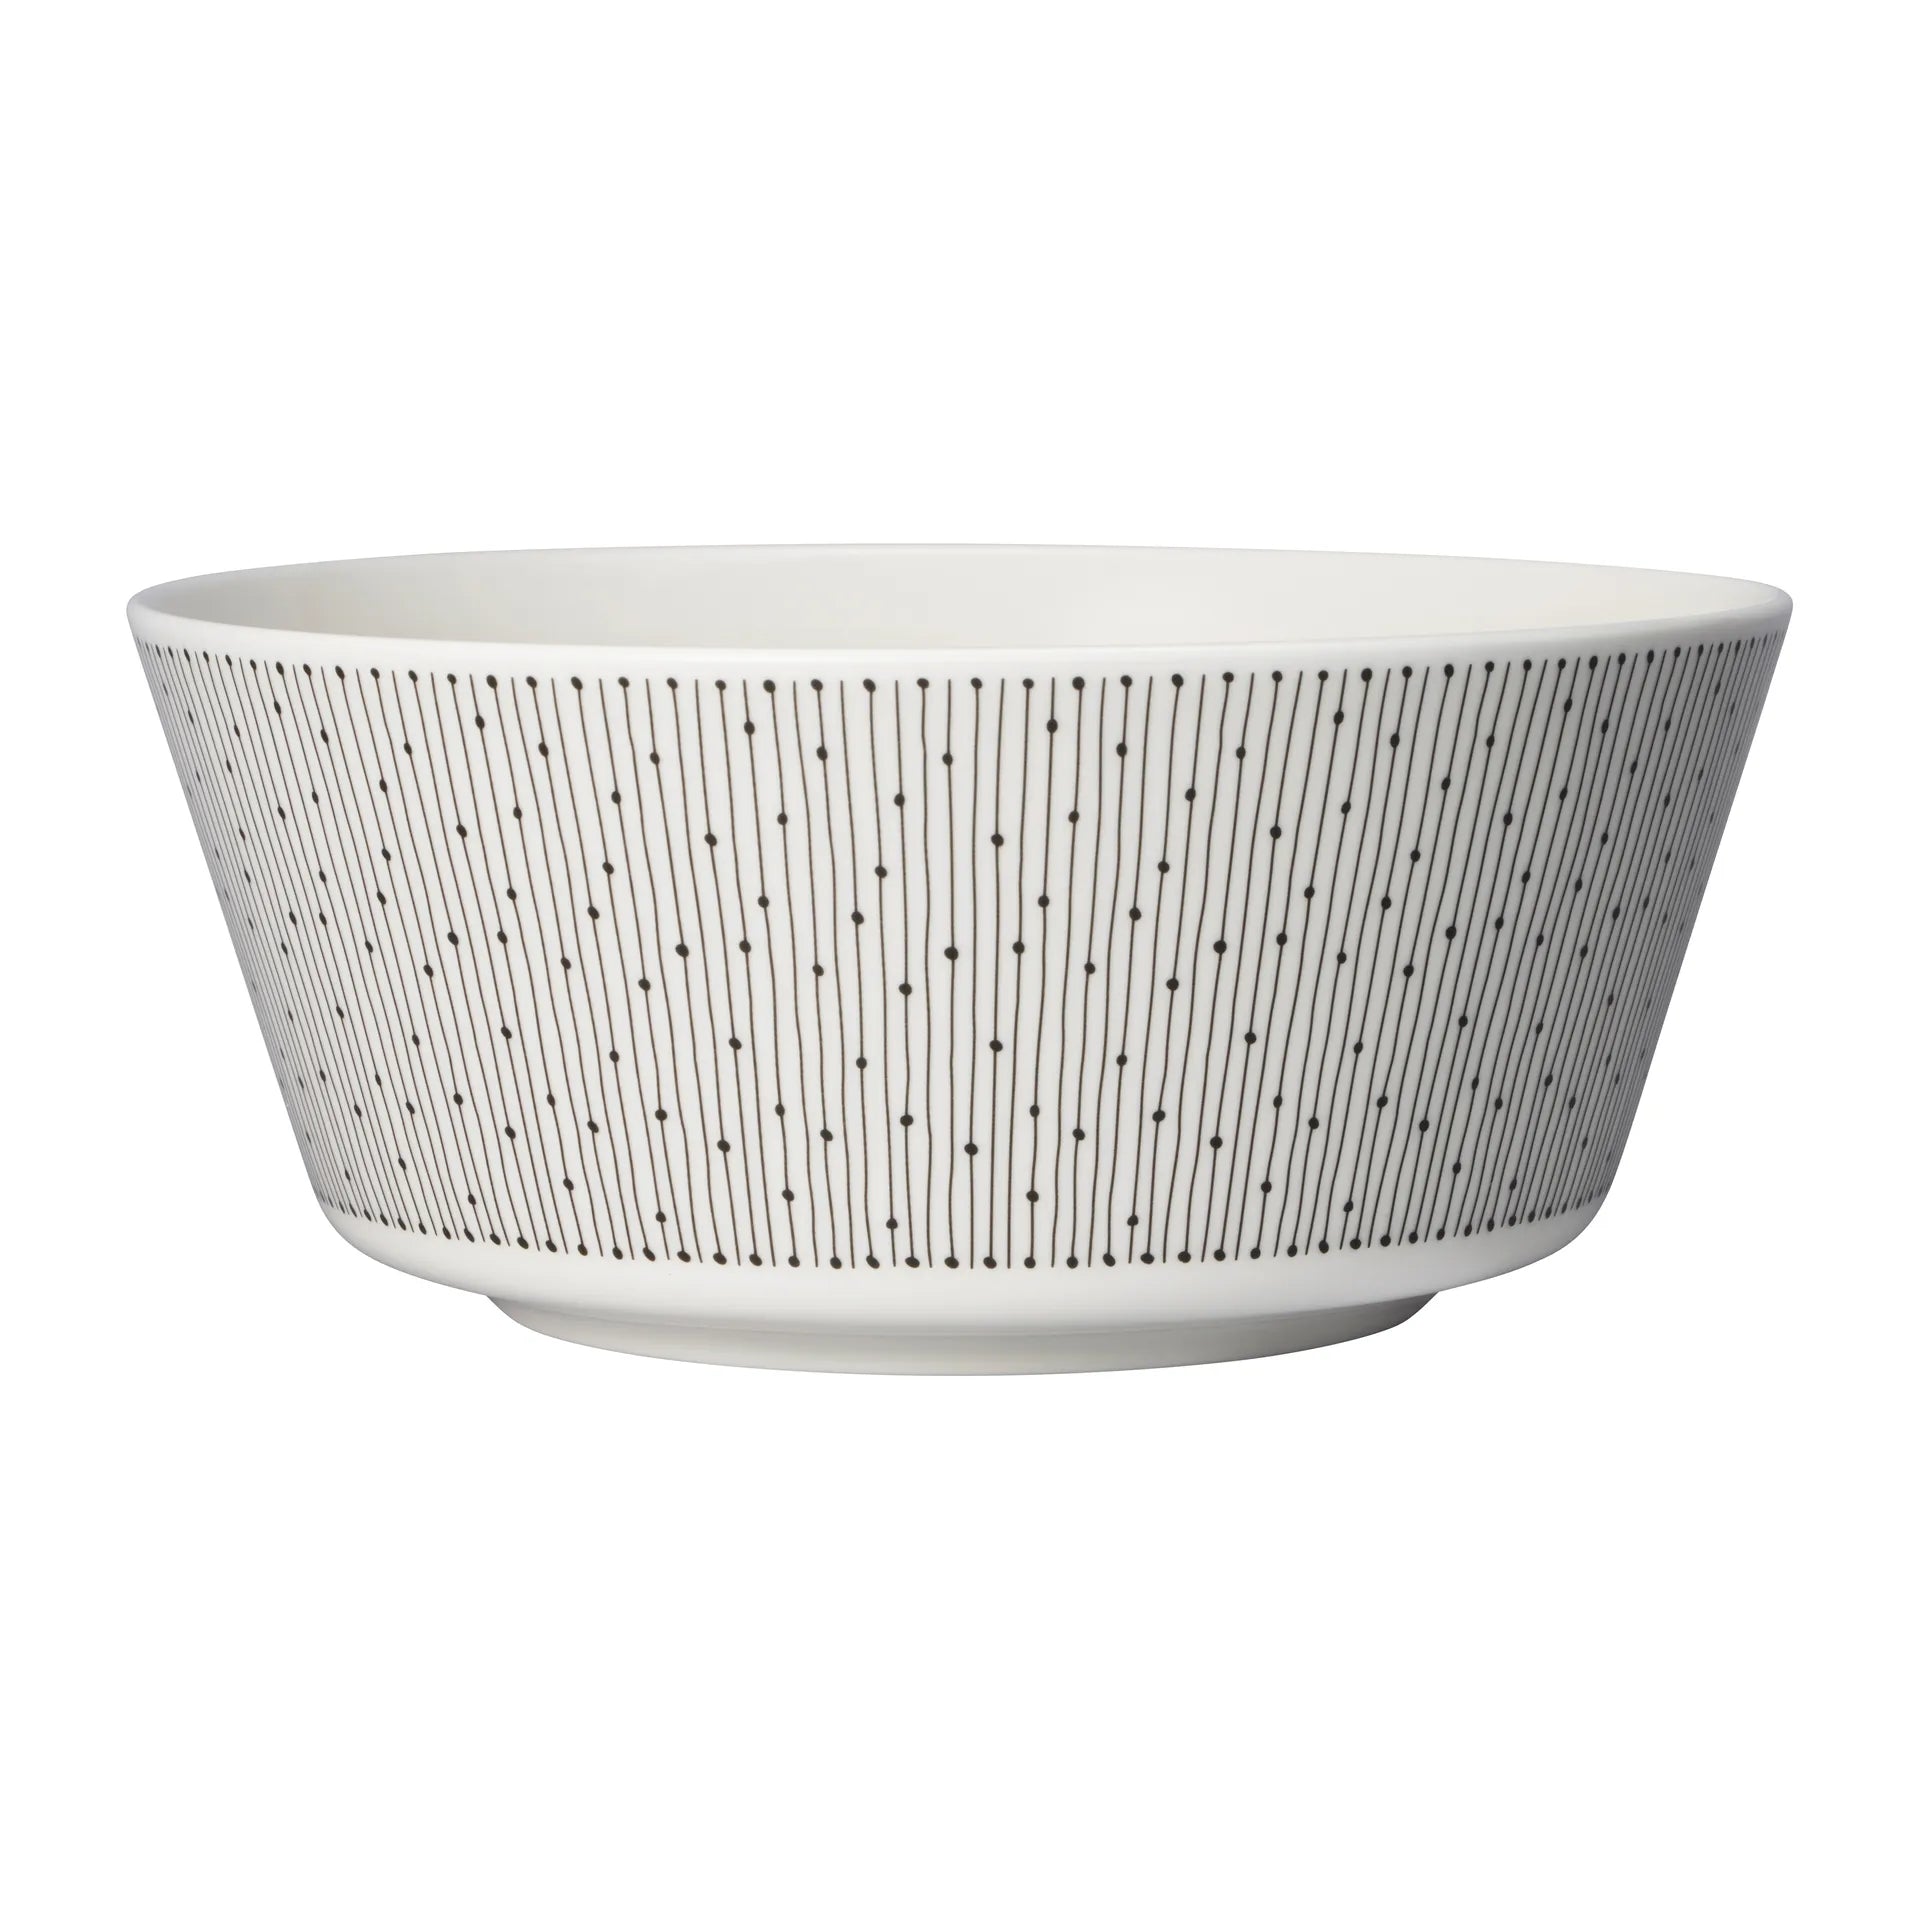 Mainio Sarastus bowl Ø23 cm - Black-white